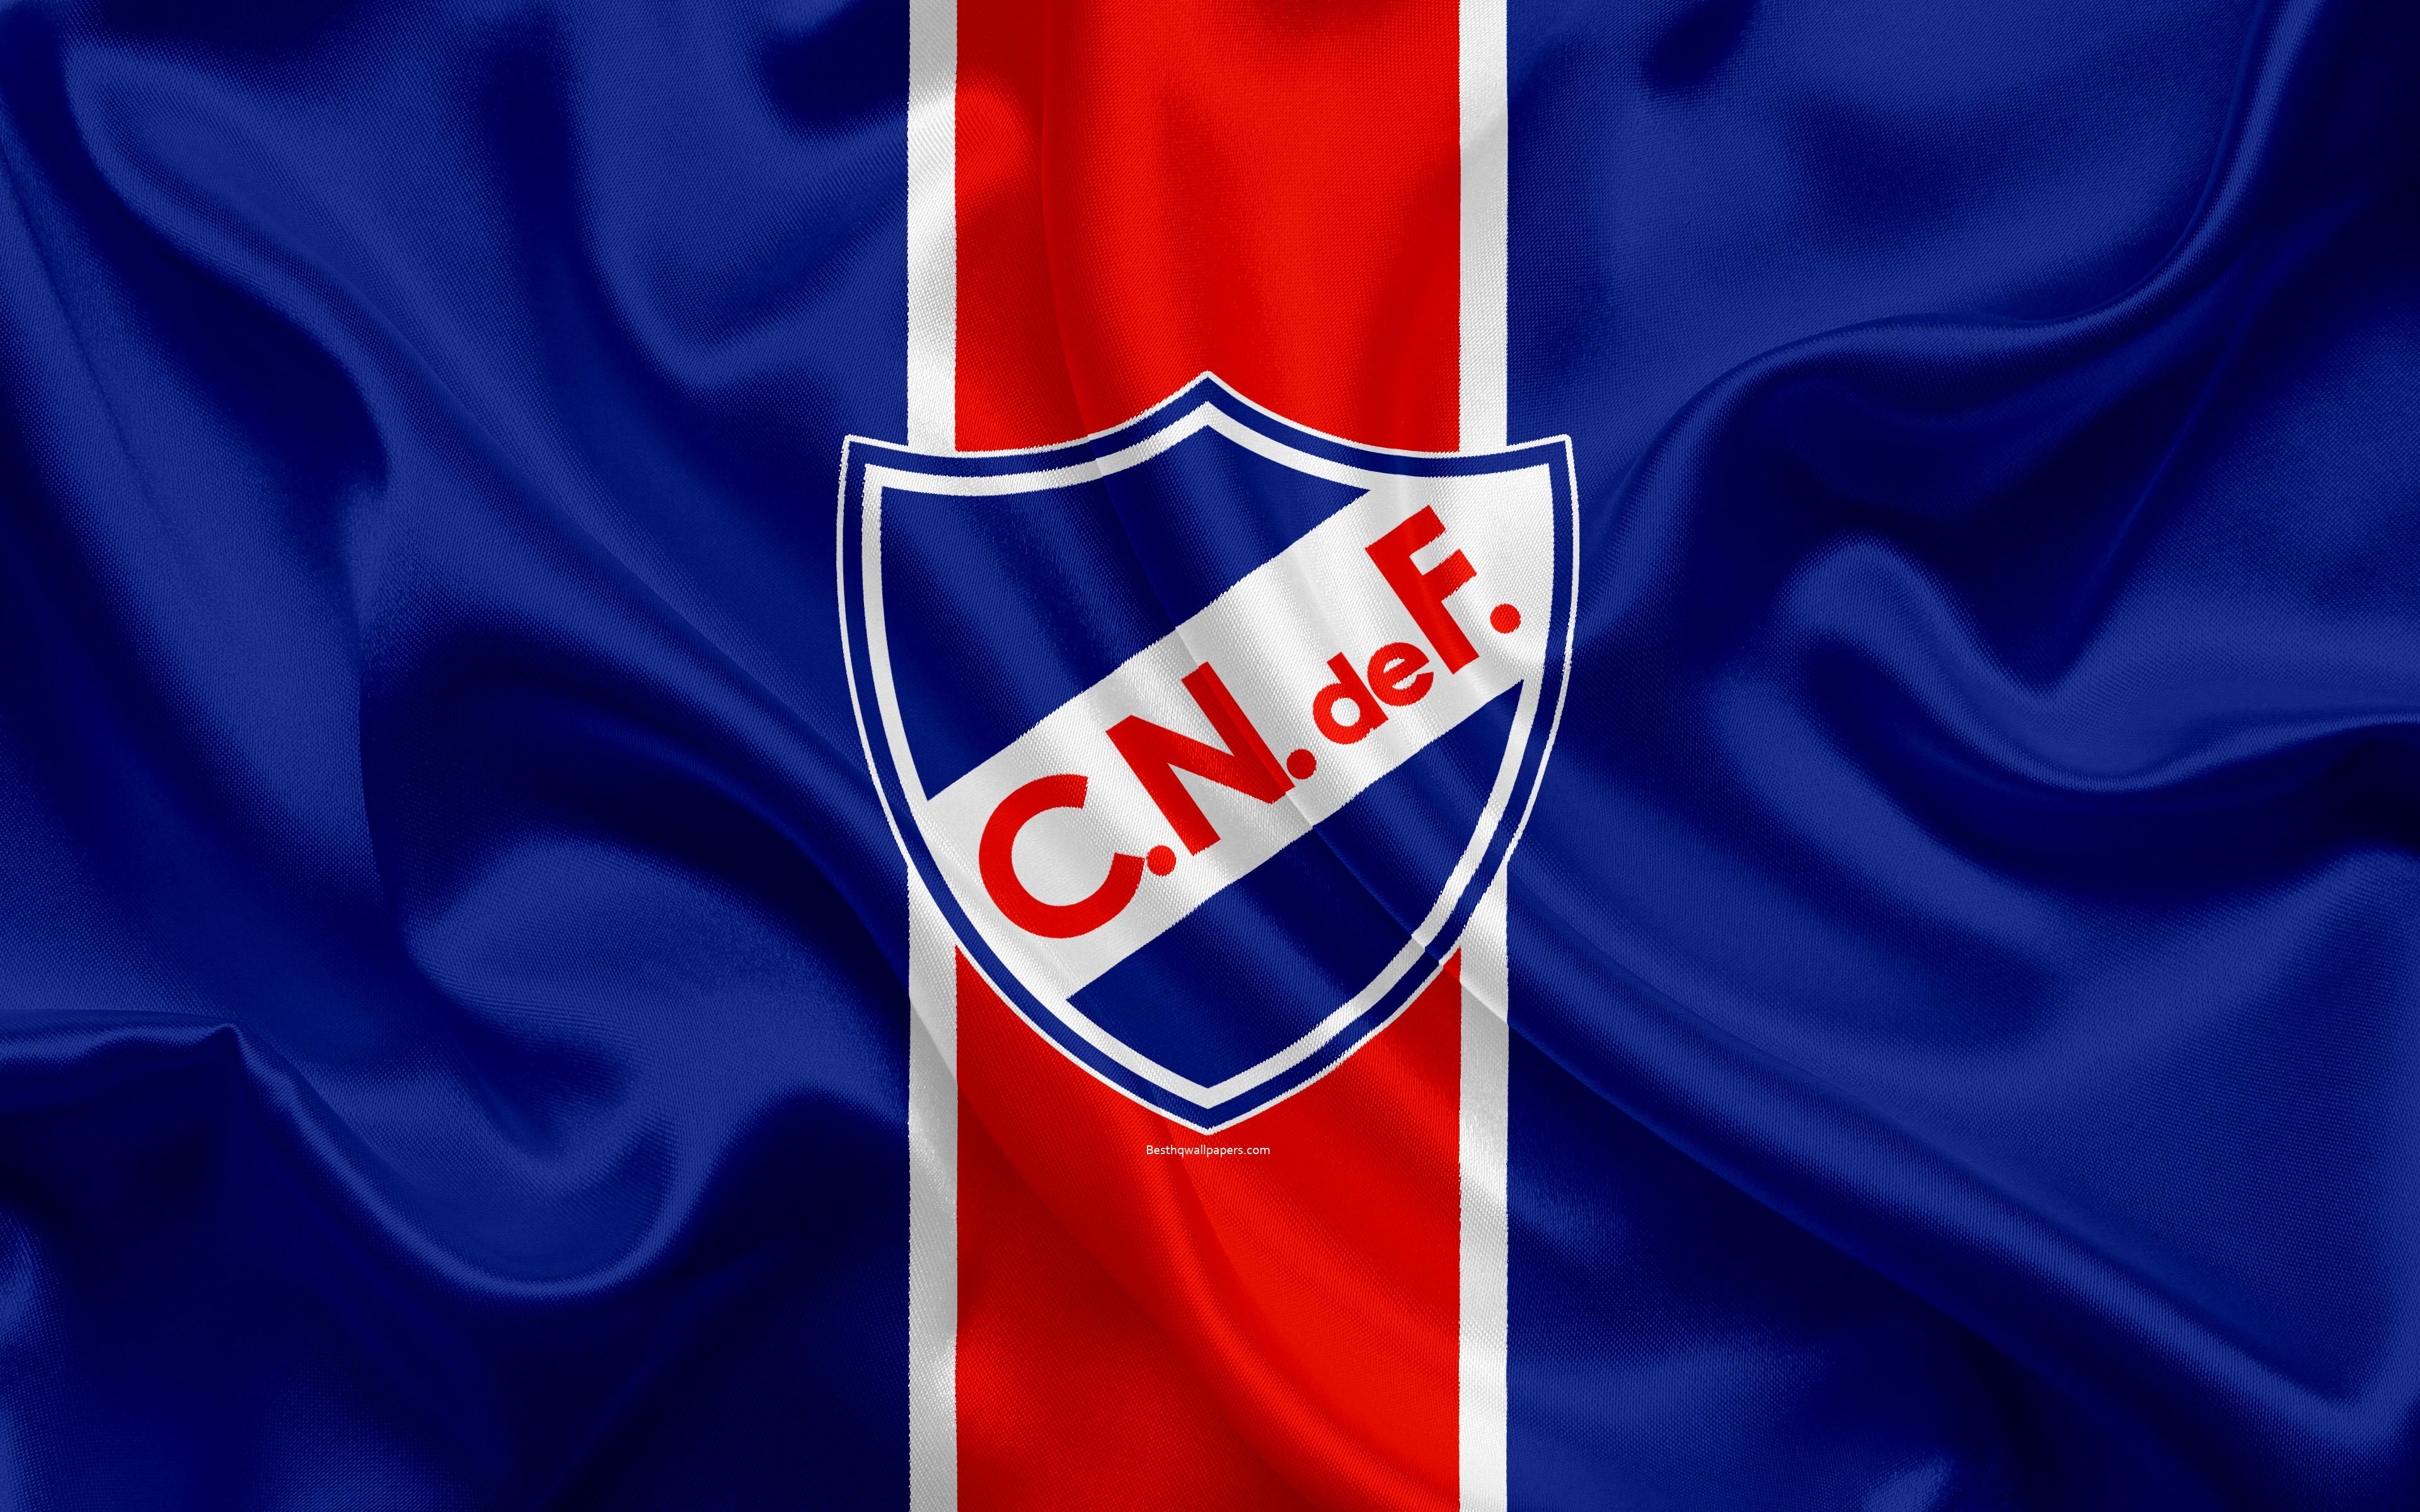 Club Nacional de Football, Club Nacional de Football